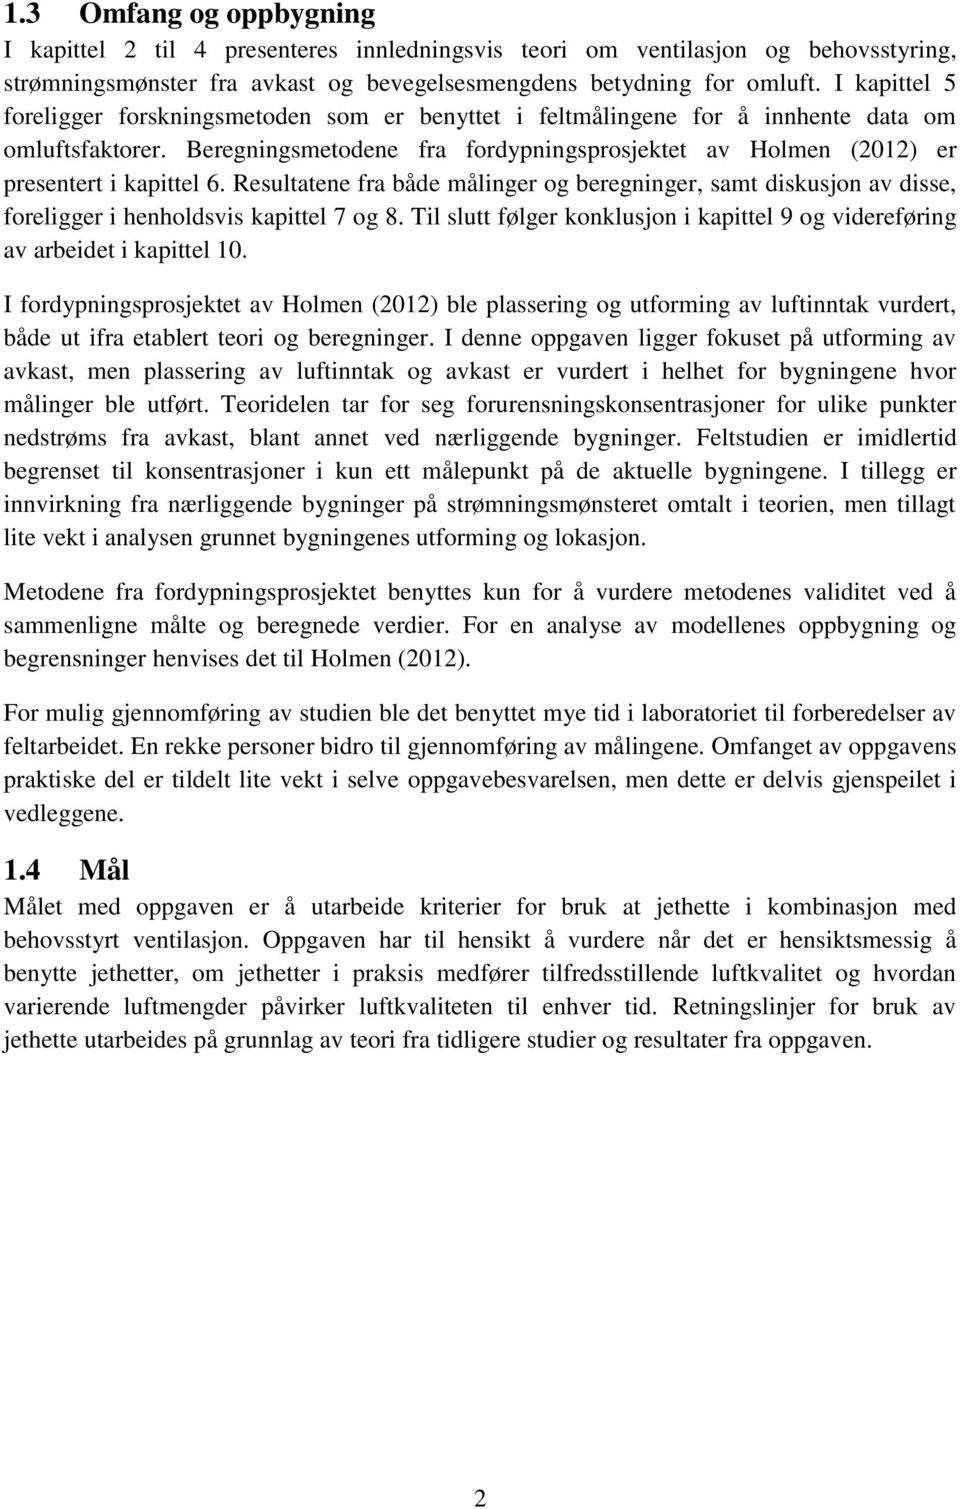 Beregningsmetodene fra fordypningsprosjektet av Holmen (2012) er presentert i kapittel 6.